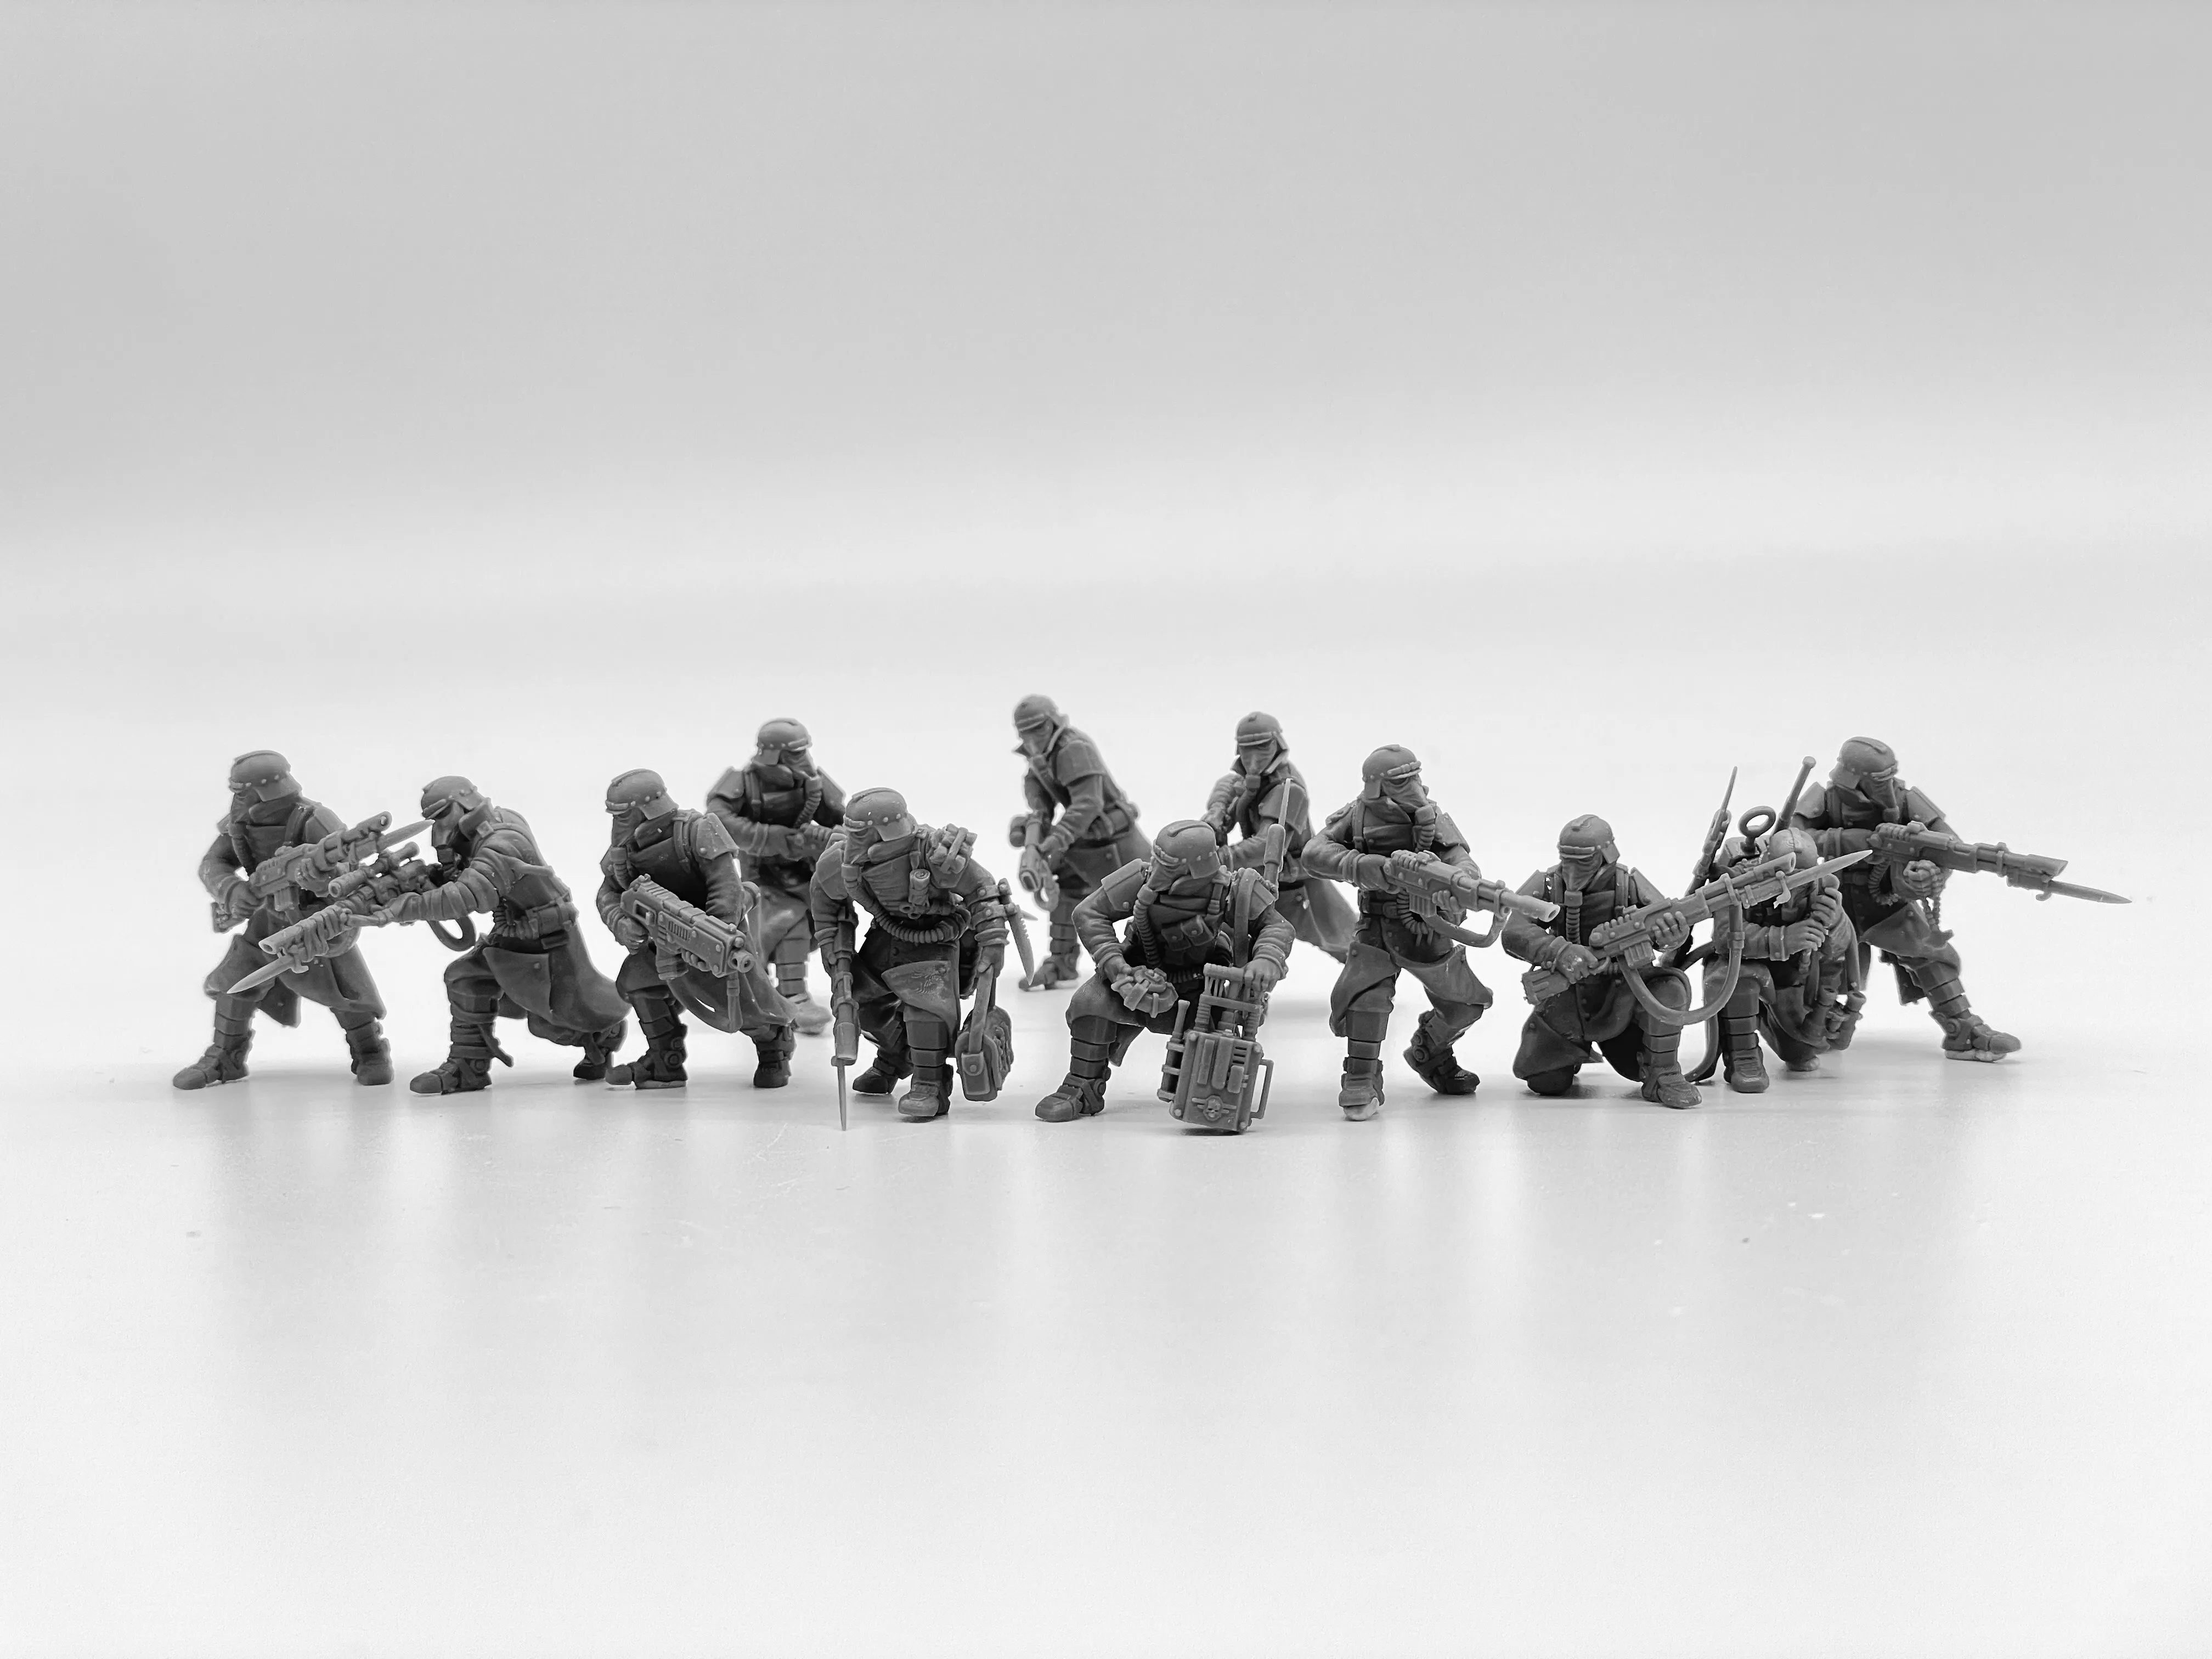 Kit de modelo de resina Imperial Force Death Division Kill, figuras de soldados sin pintar para juegos de guerra en miniatura, escala de 28mm, juegos de mesa